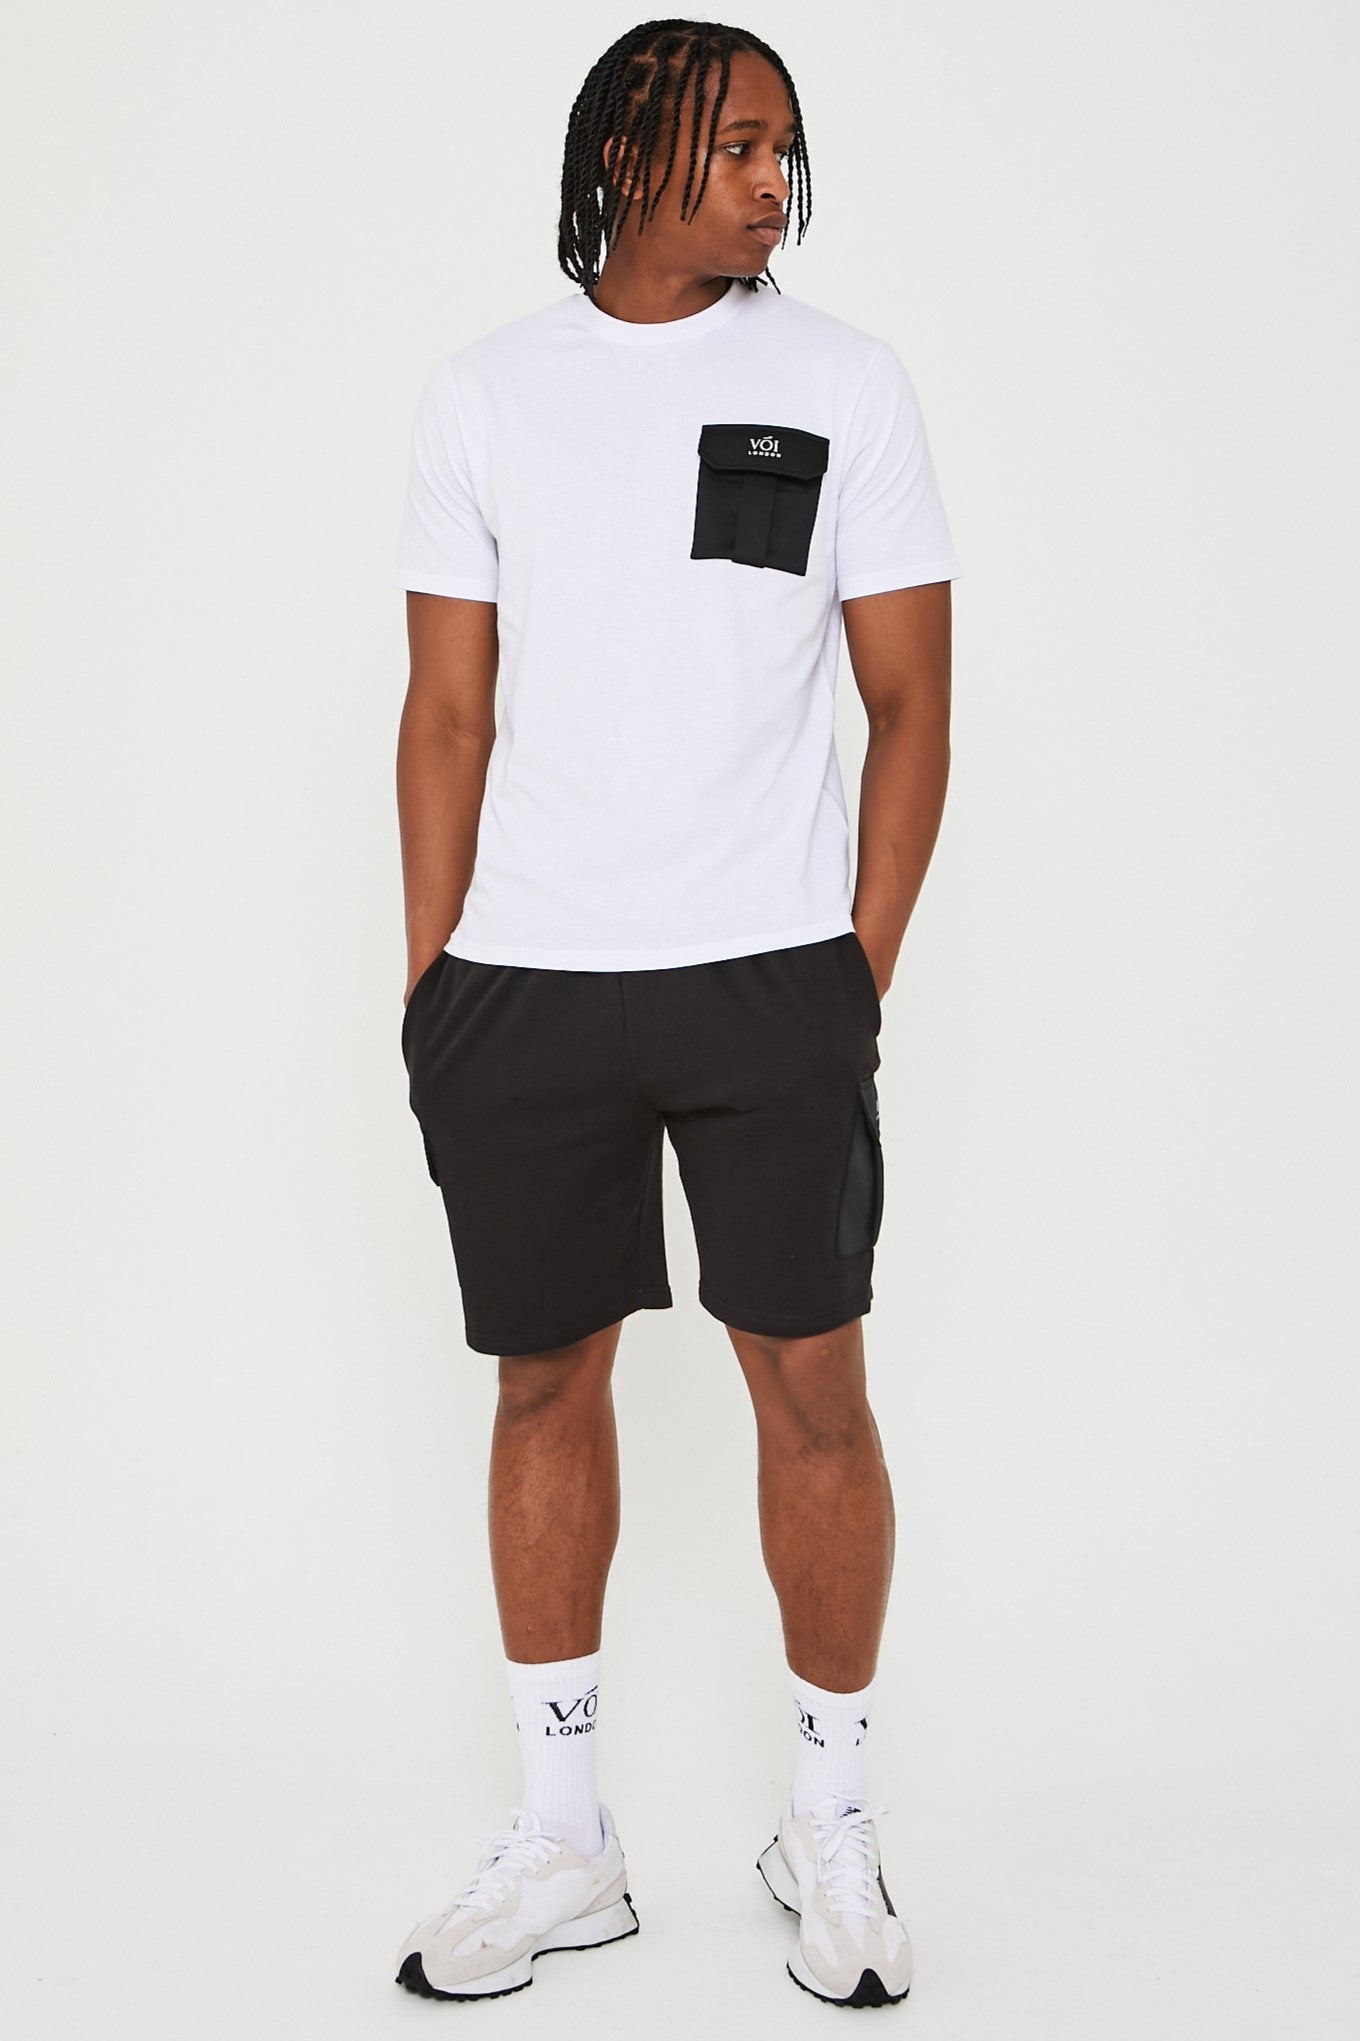 Mell Street T-Shirt & Short Set - White / Black